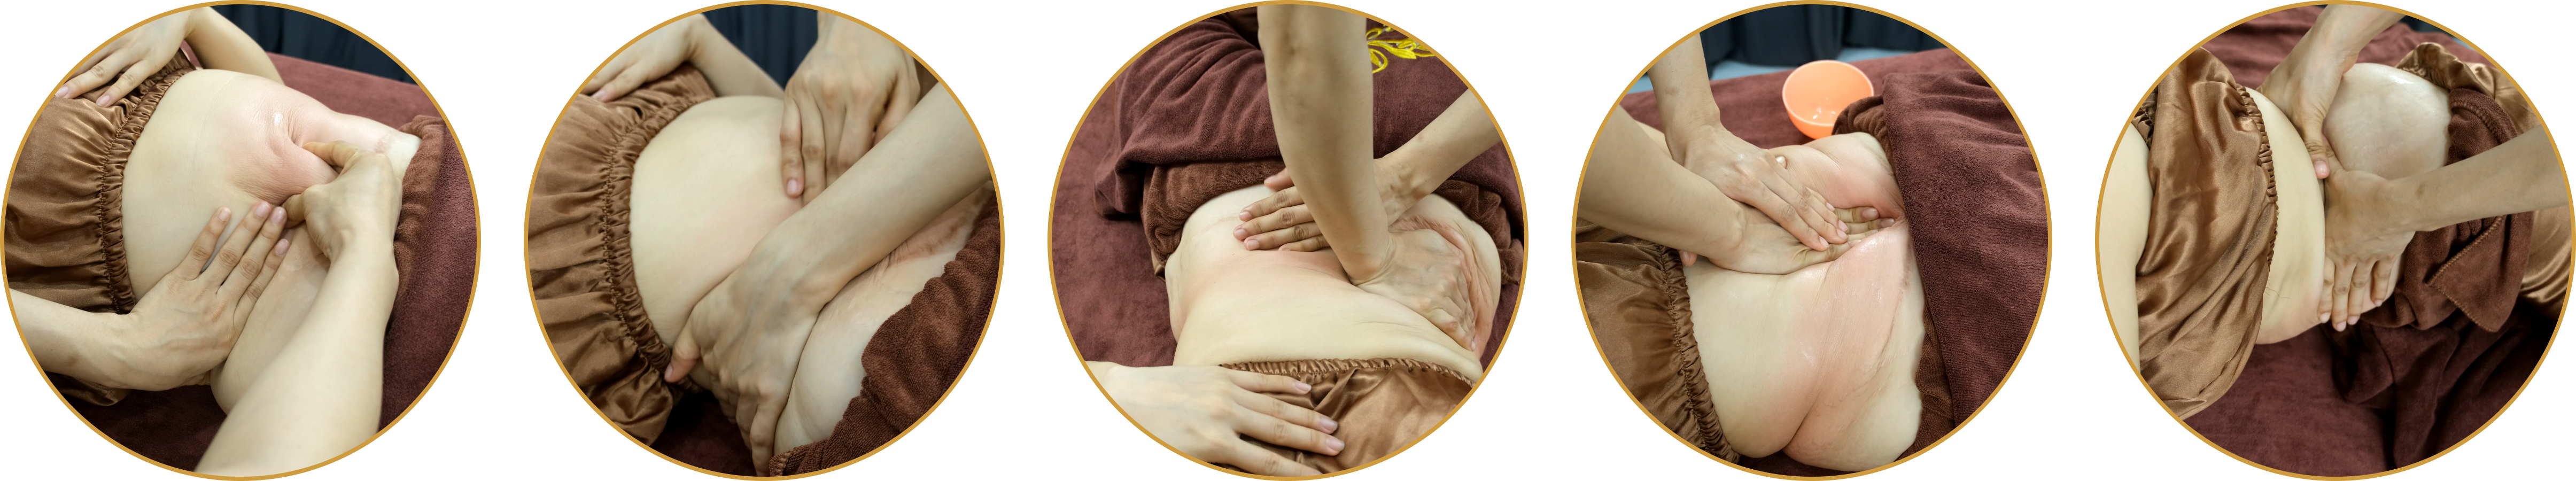 Quy trình liệu pháp massage dưỡng sinh giảm béo tại Queen Spa